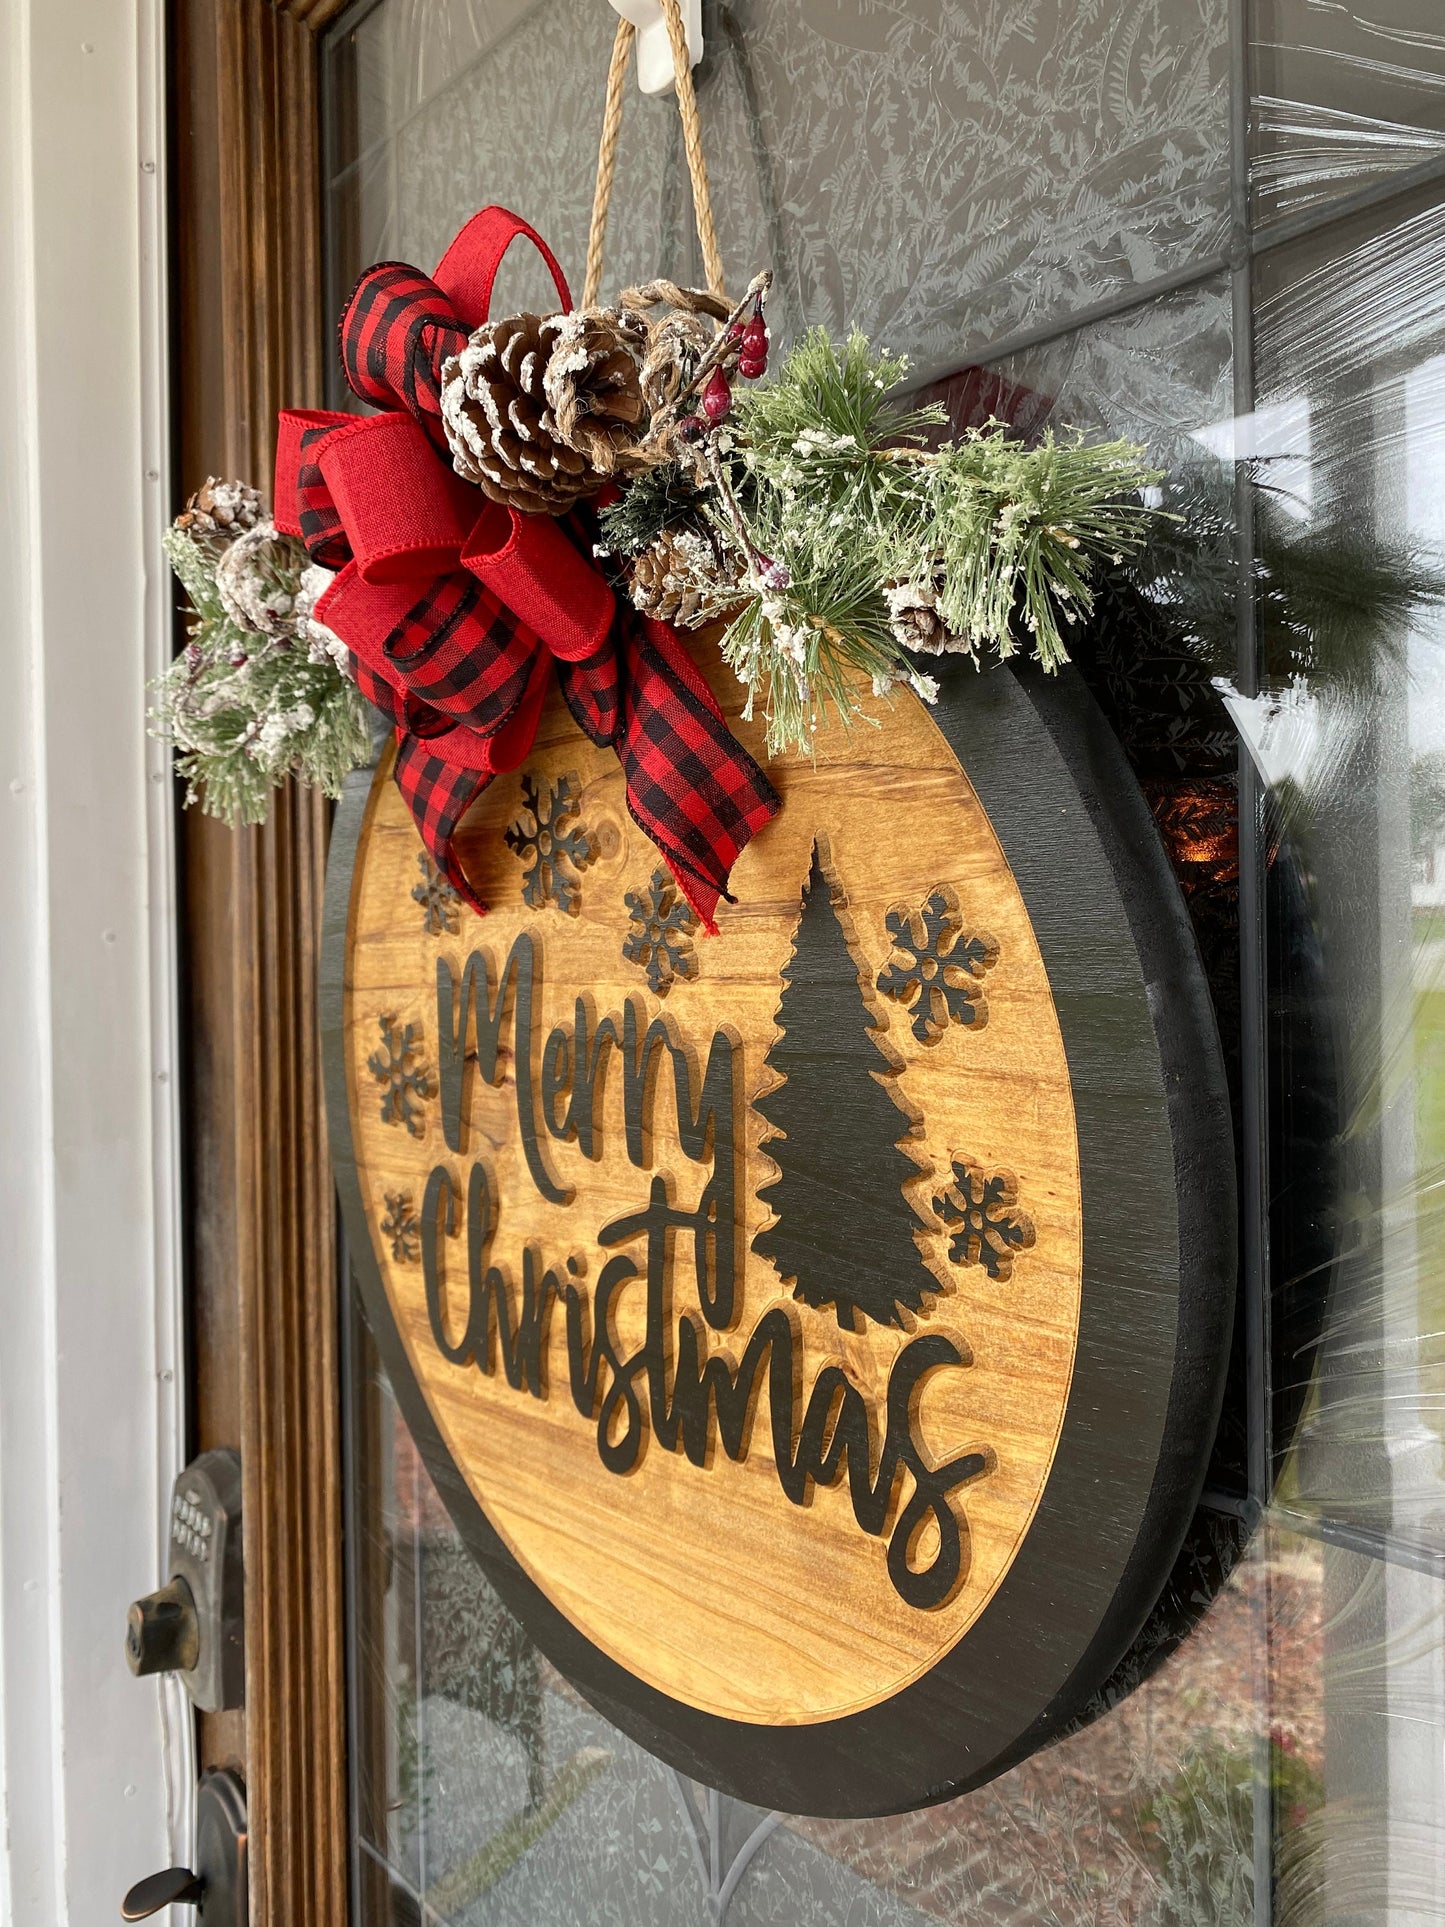 Merry Christmas Door Hanger